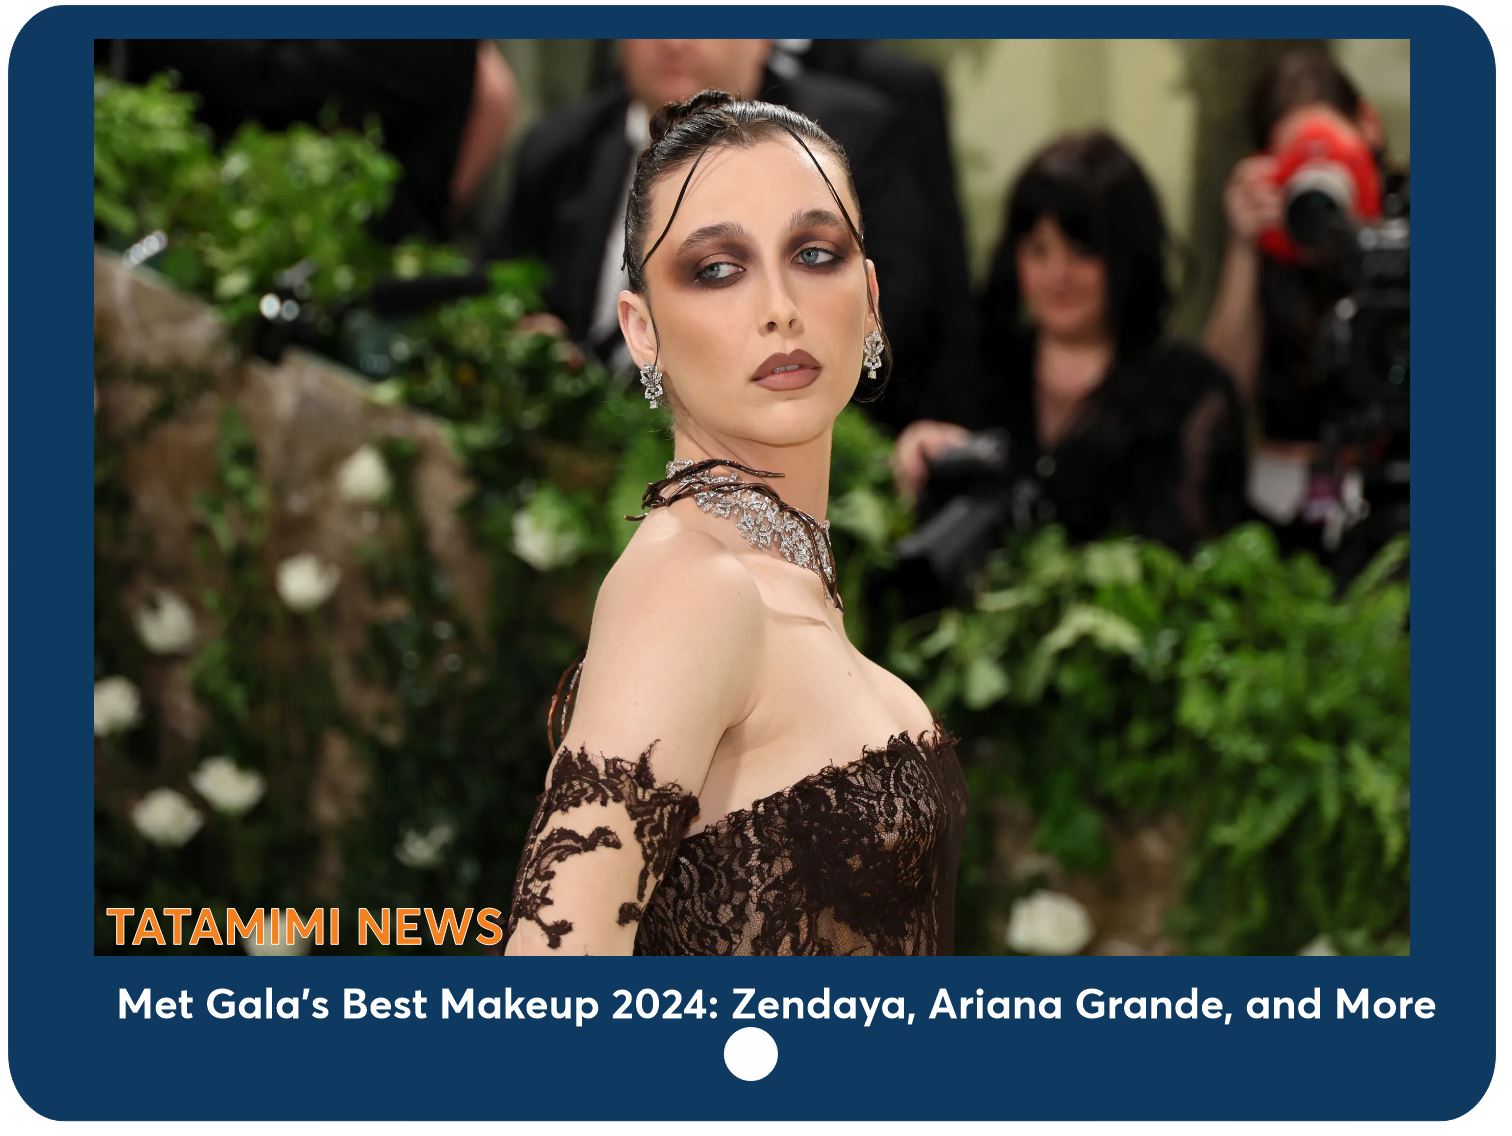 Met Gala's Best Makeup 2024: